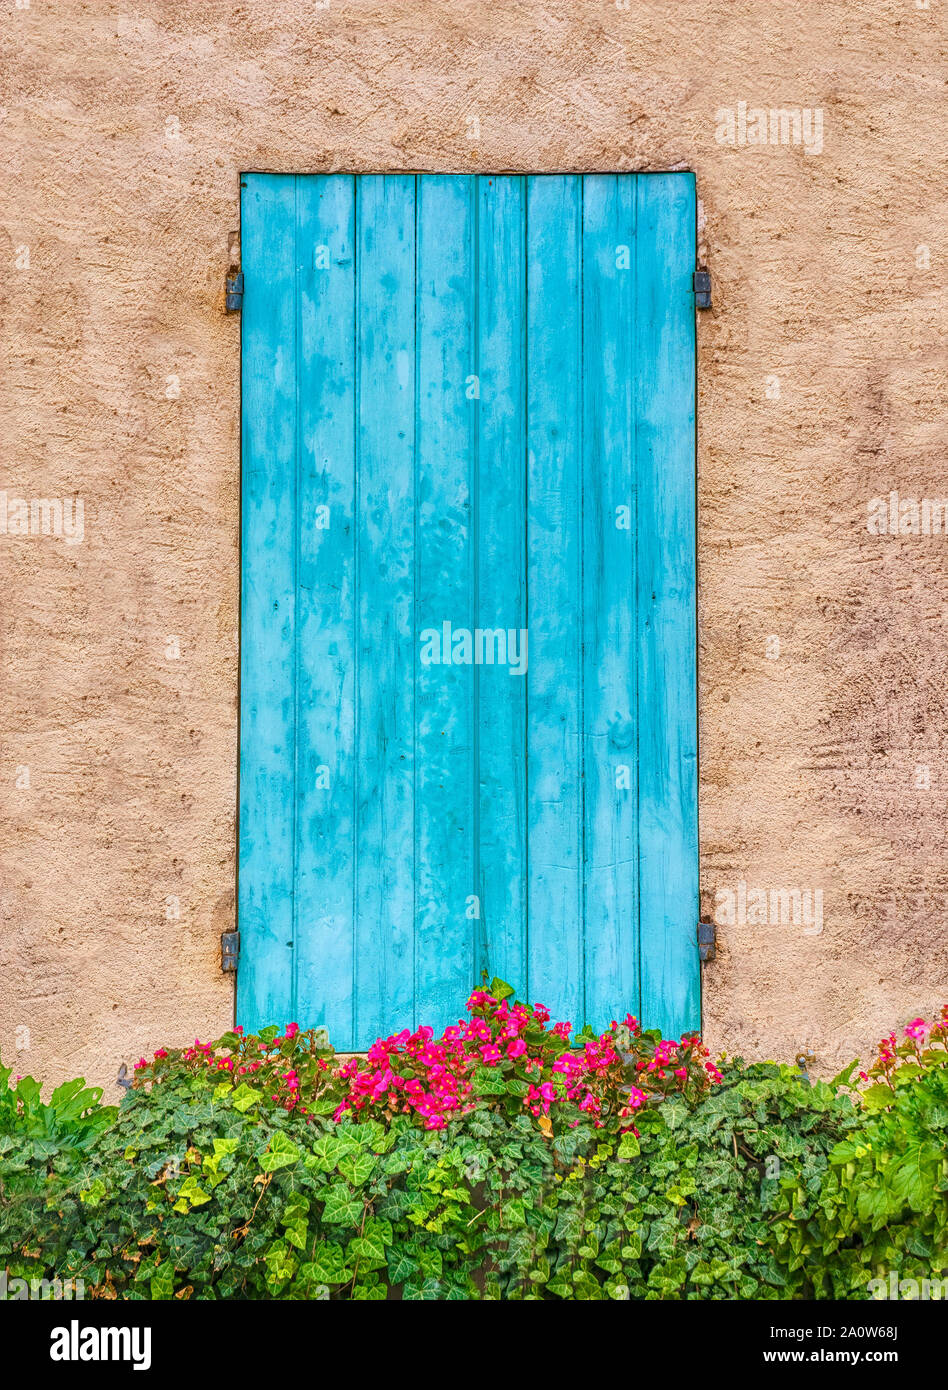 Volets en bois bleu joli, ressemblant à une porte, avec des fleurs poussant dans une fenêtre de dialogue, en Provence, France. Banque D'Images